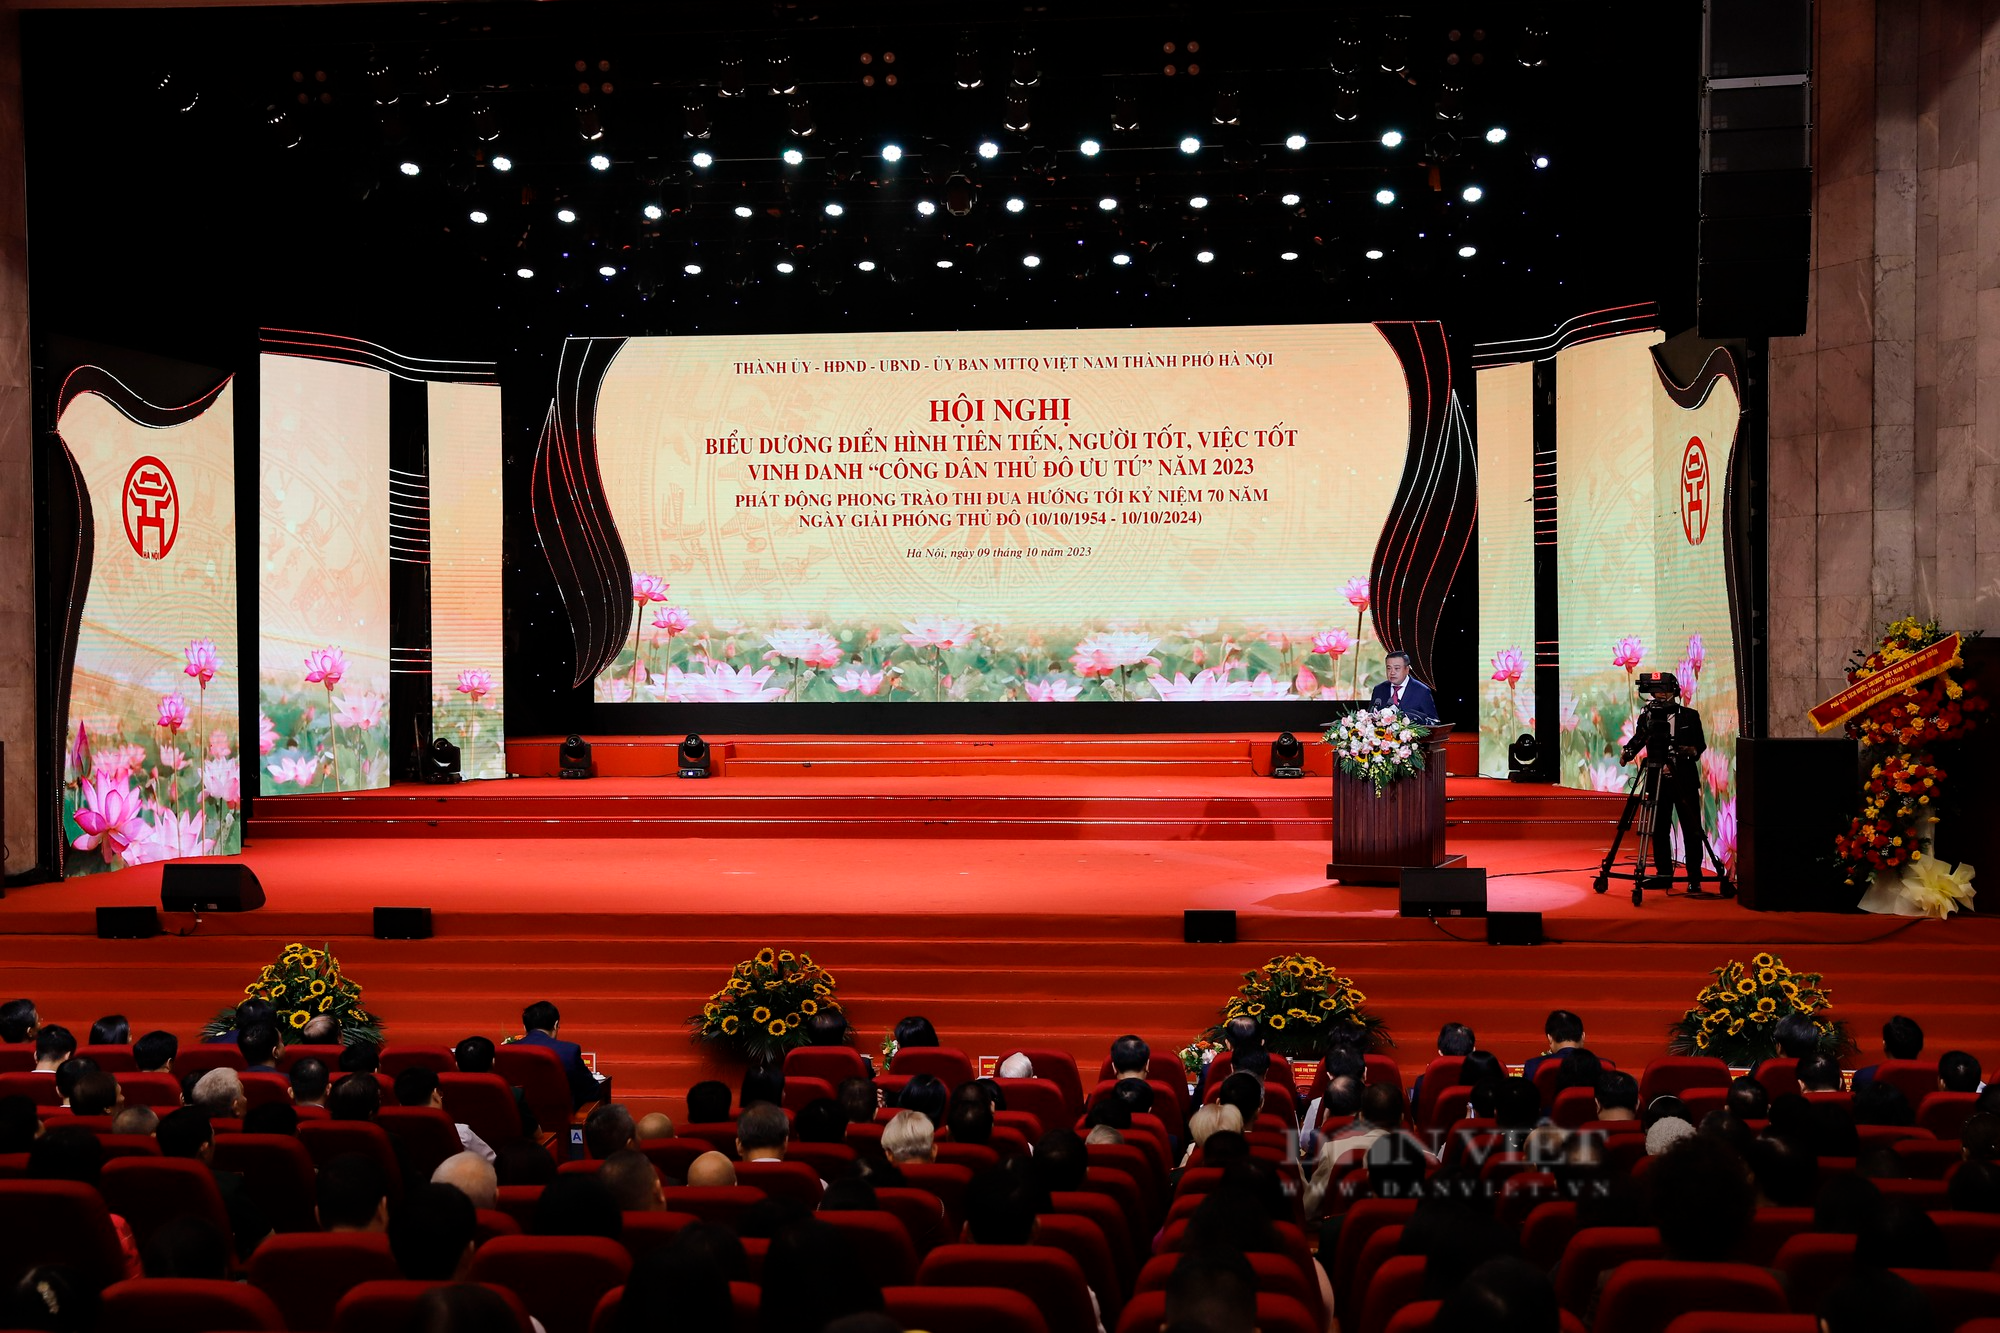 Hình ảnh Thủ tướng Phạm Minh Chính dự Hội nghị vinh danh Công dân Thủ đô Ưu tú năm 2023 - Ảnh 1.